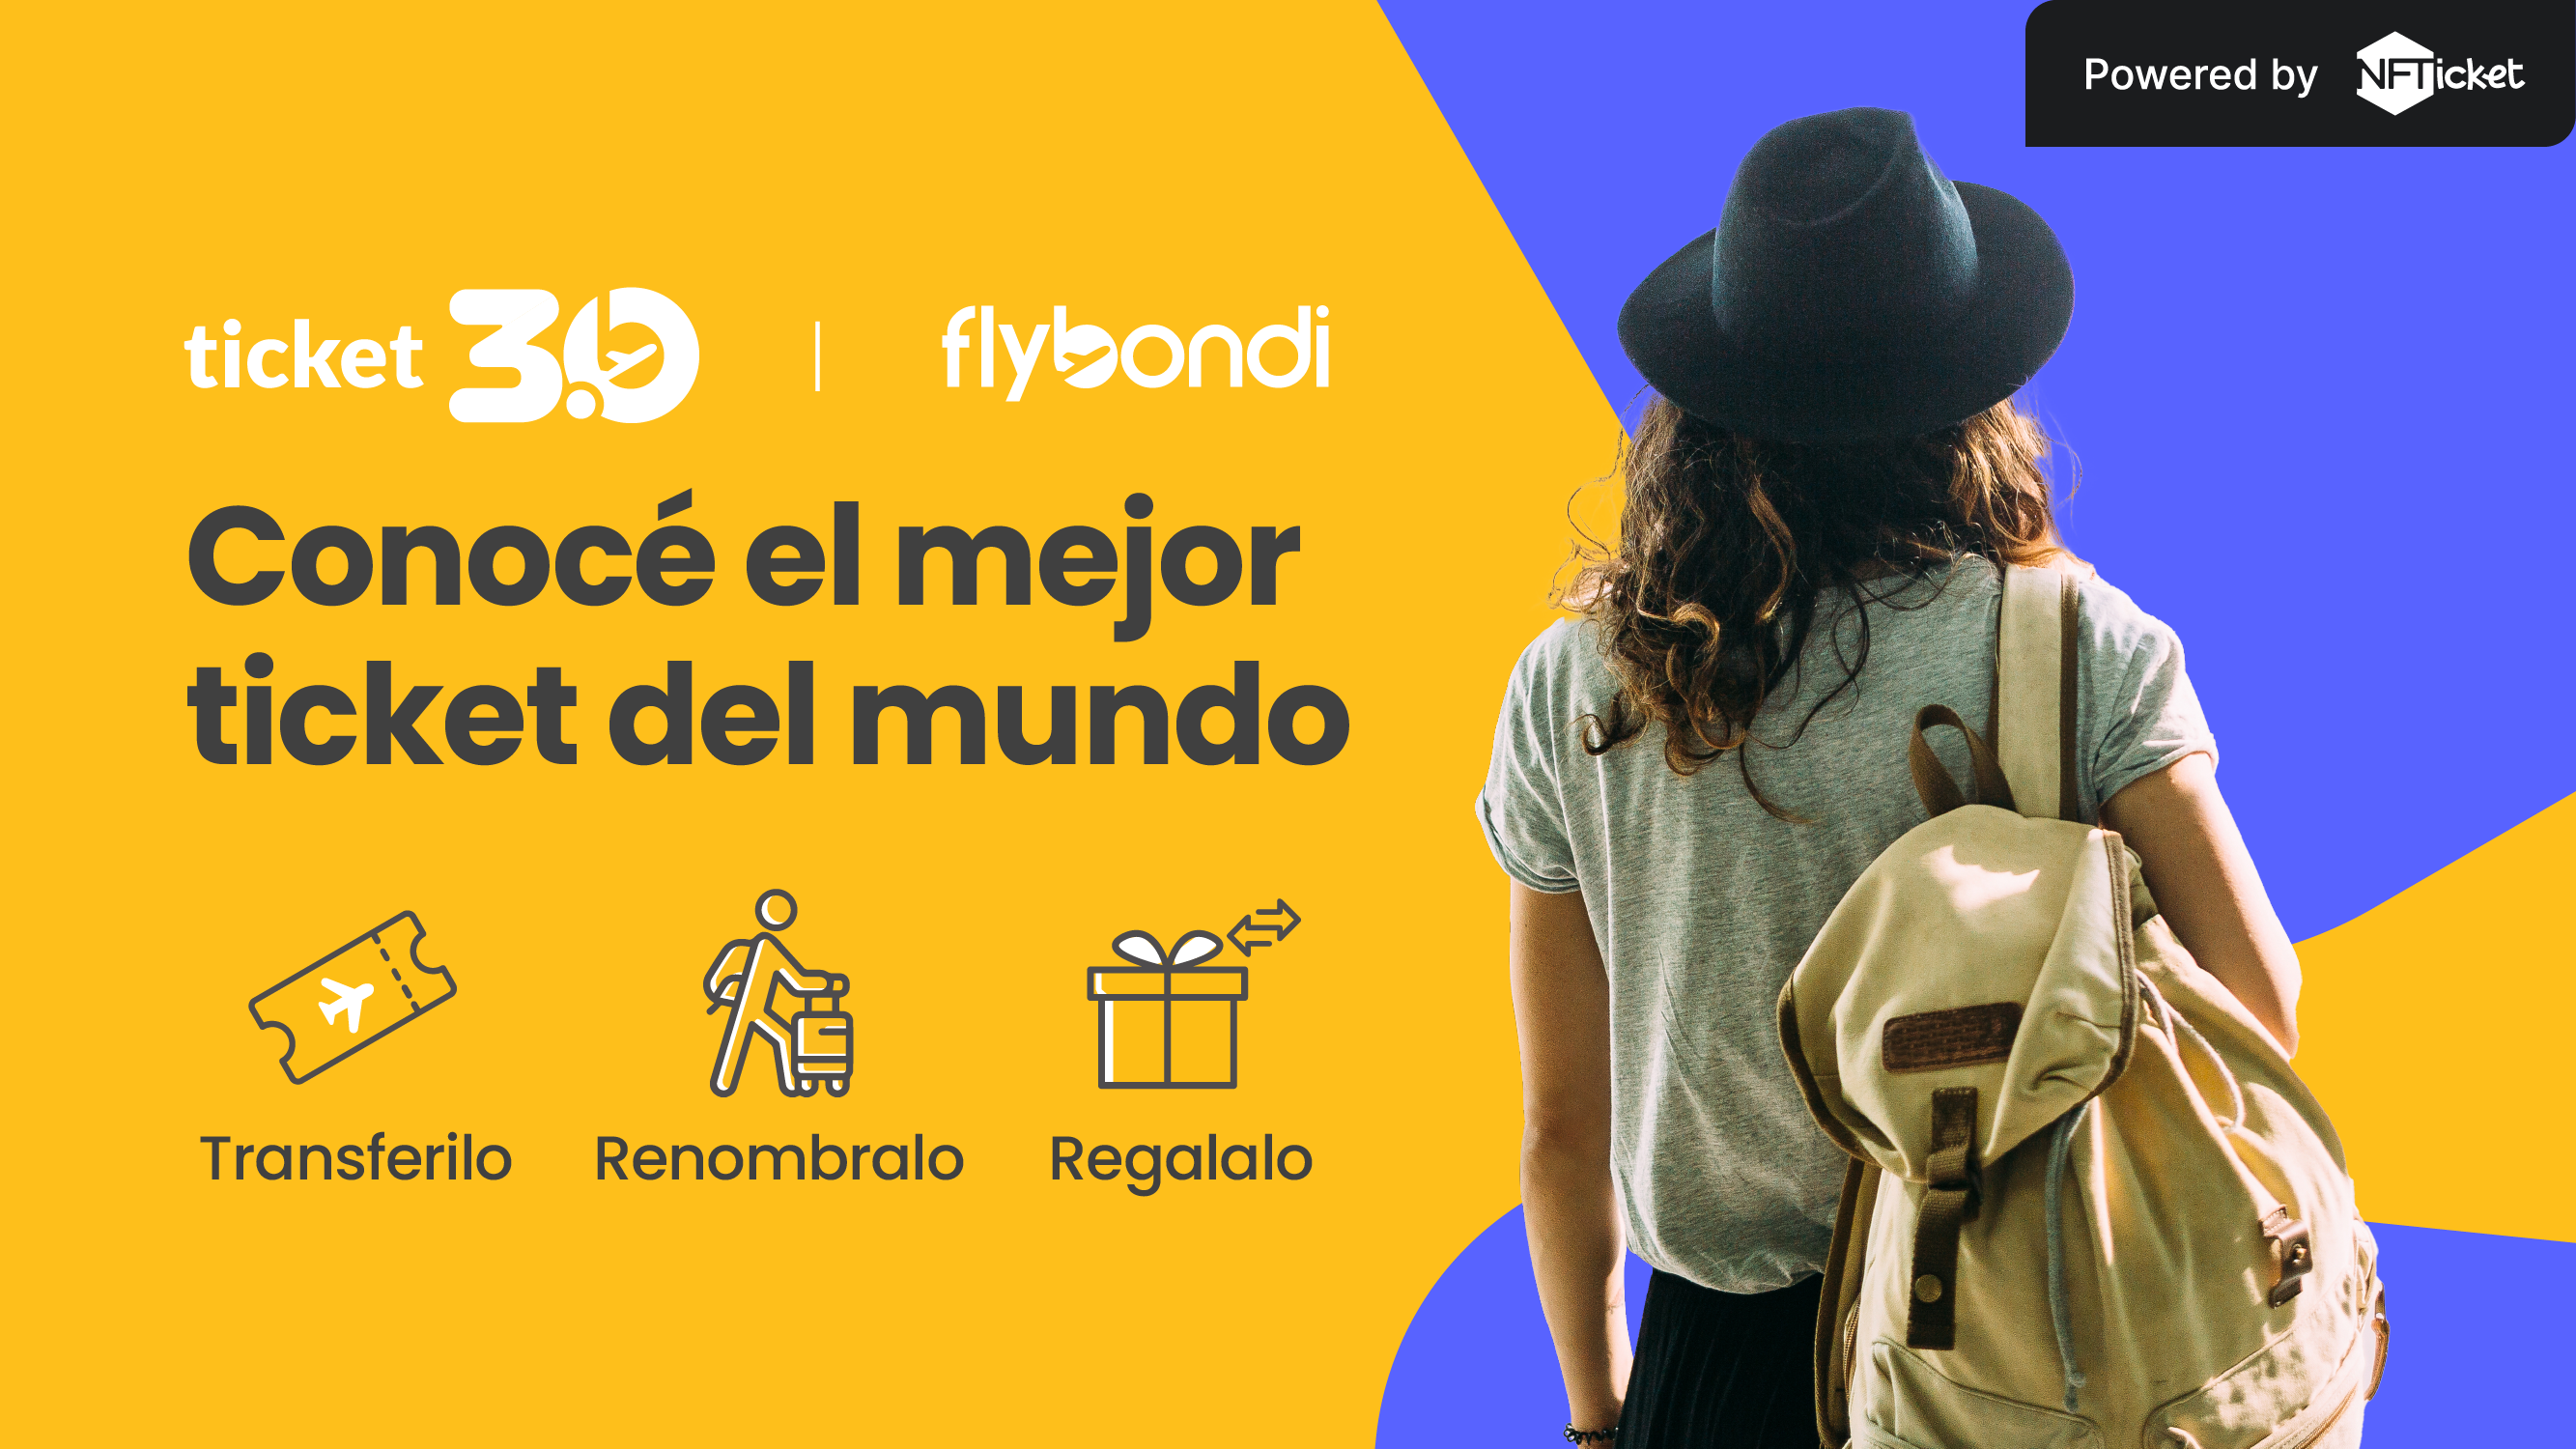 Flybondi's Ticket 3.0